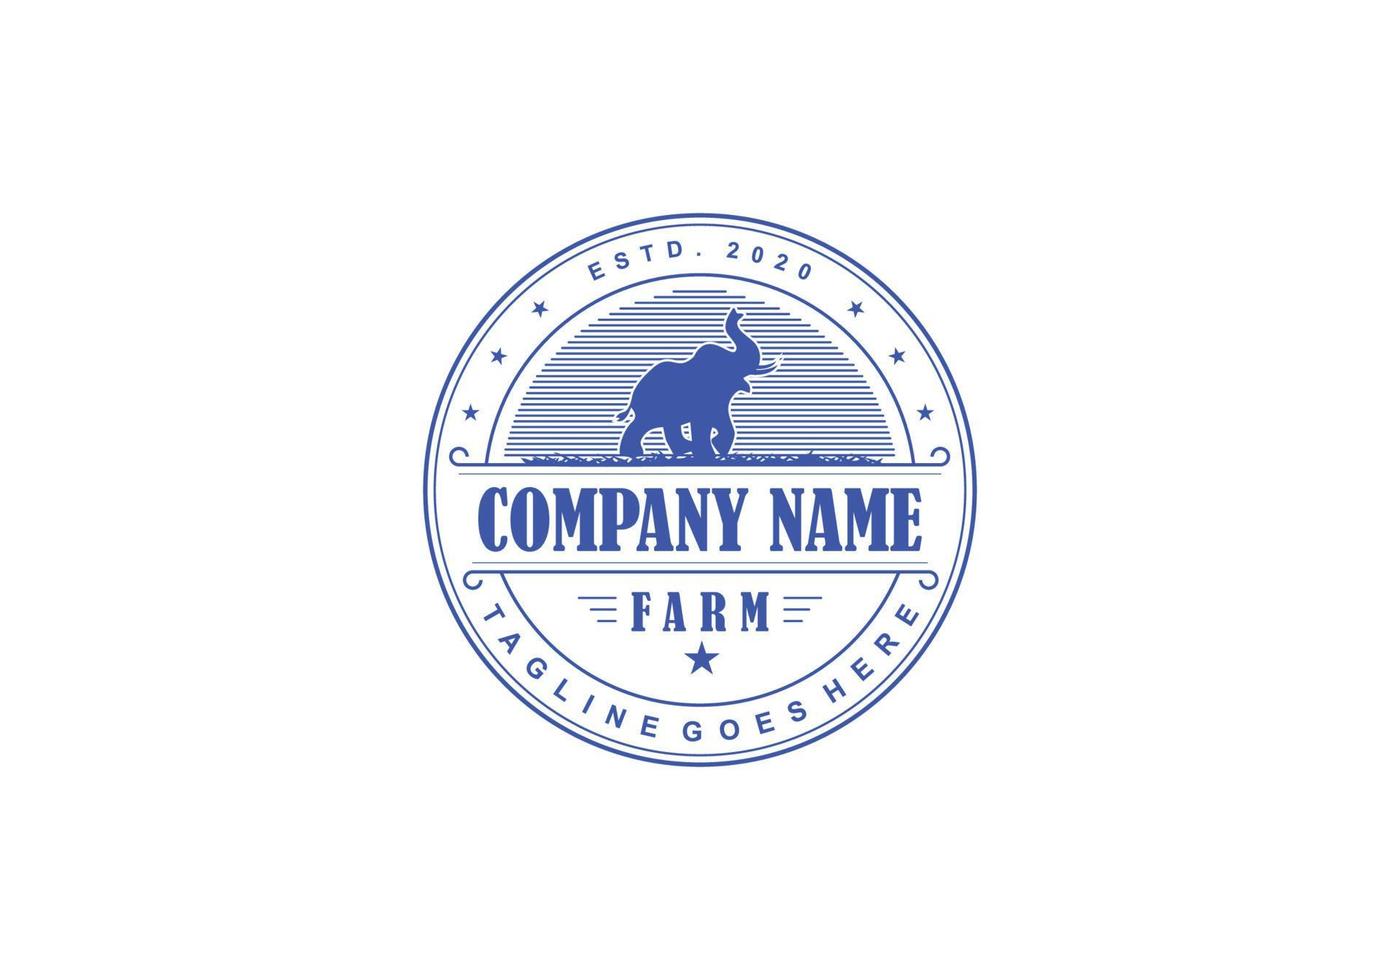 Retro Vintage Cattle Beef Emblem Label logo design and elephant symbol inspiration vector